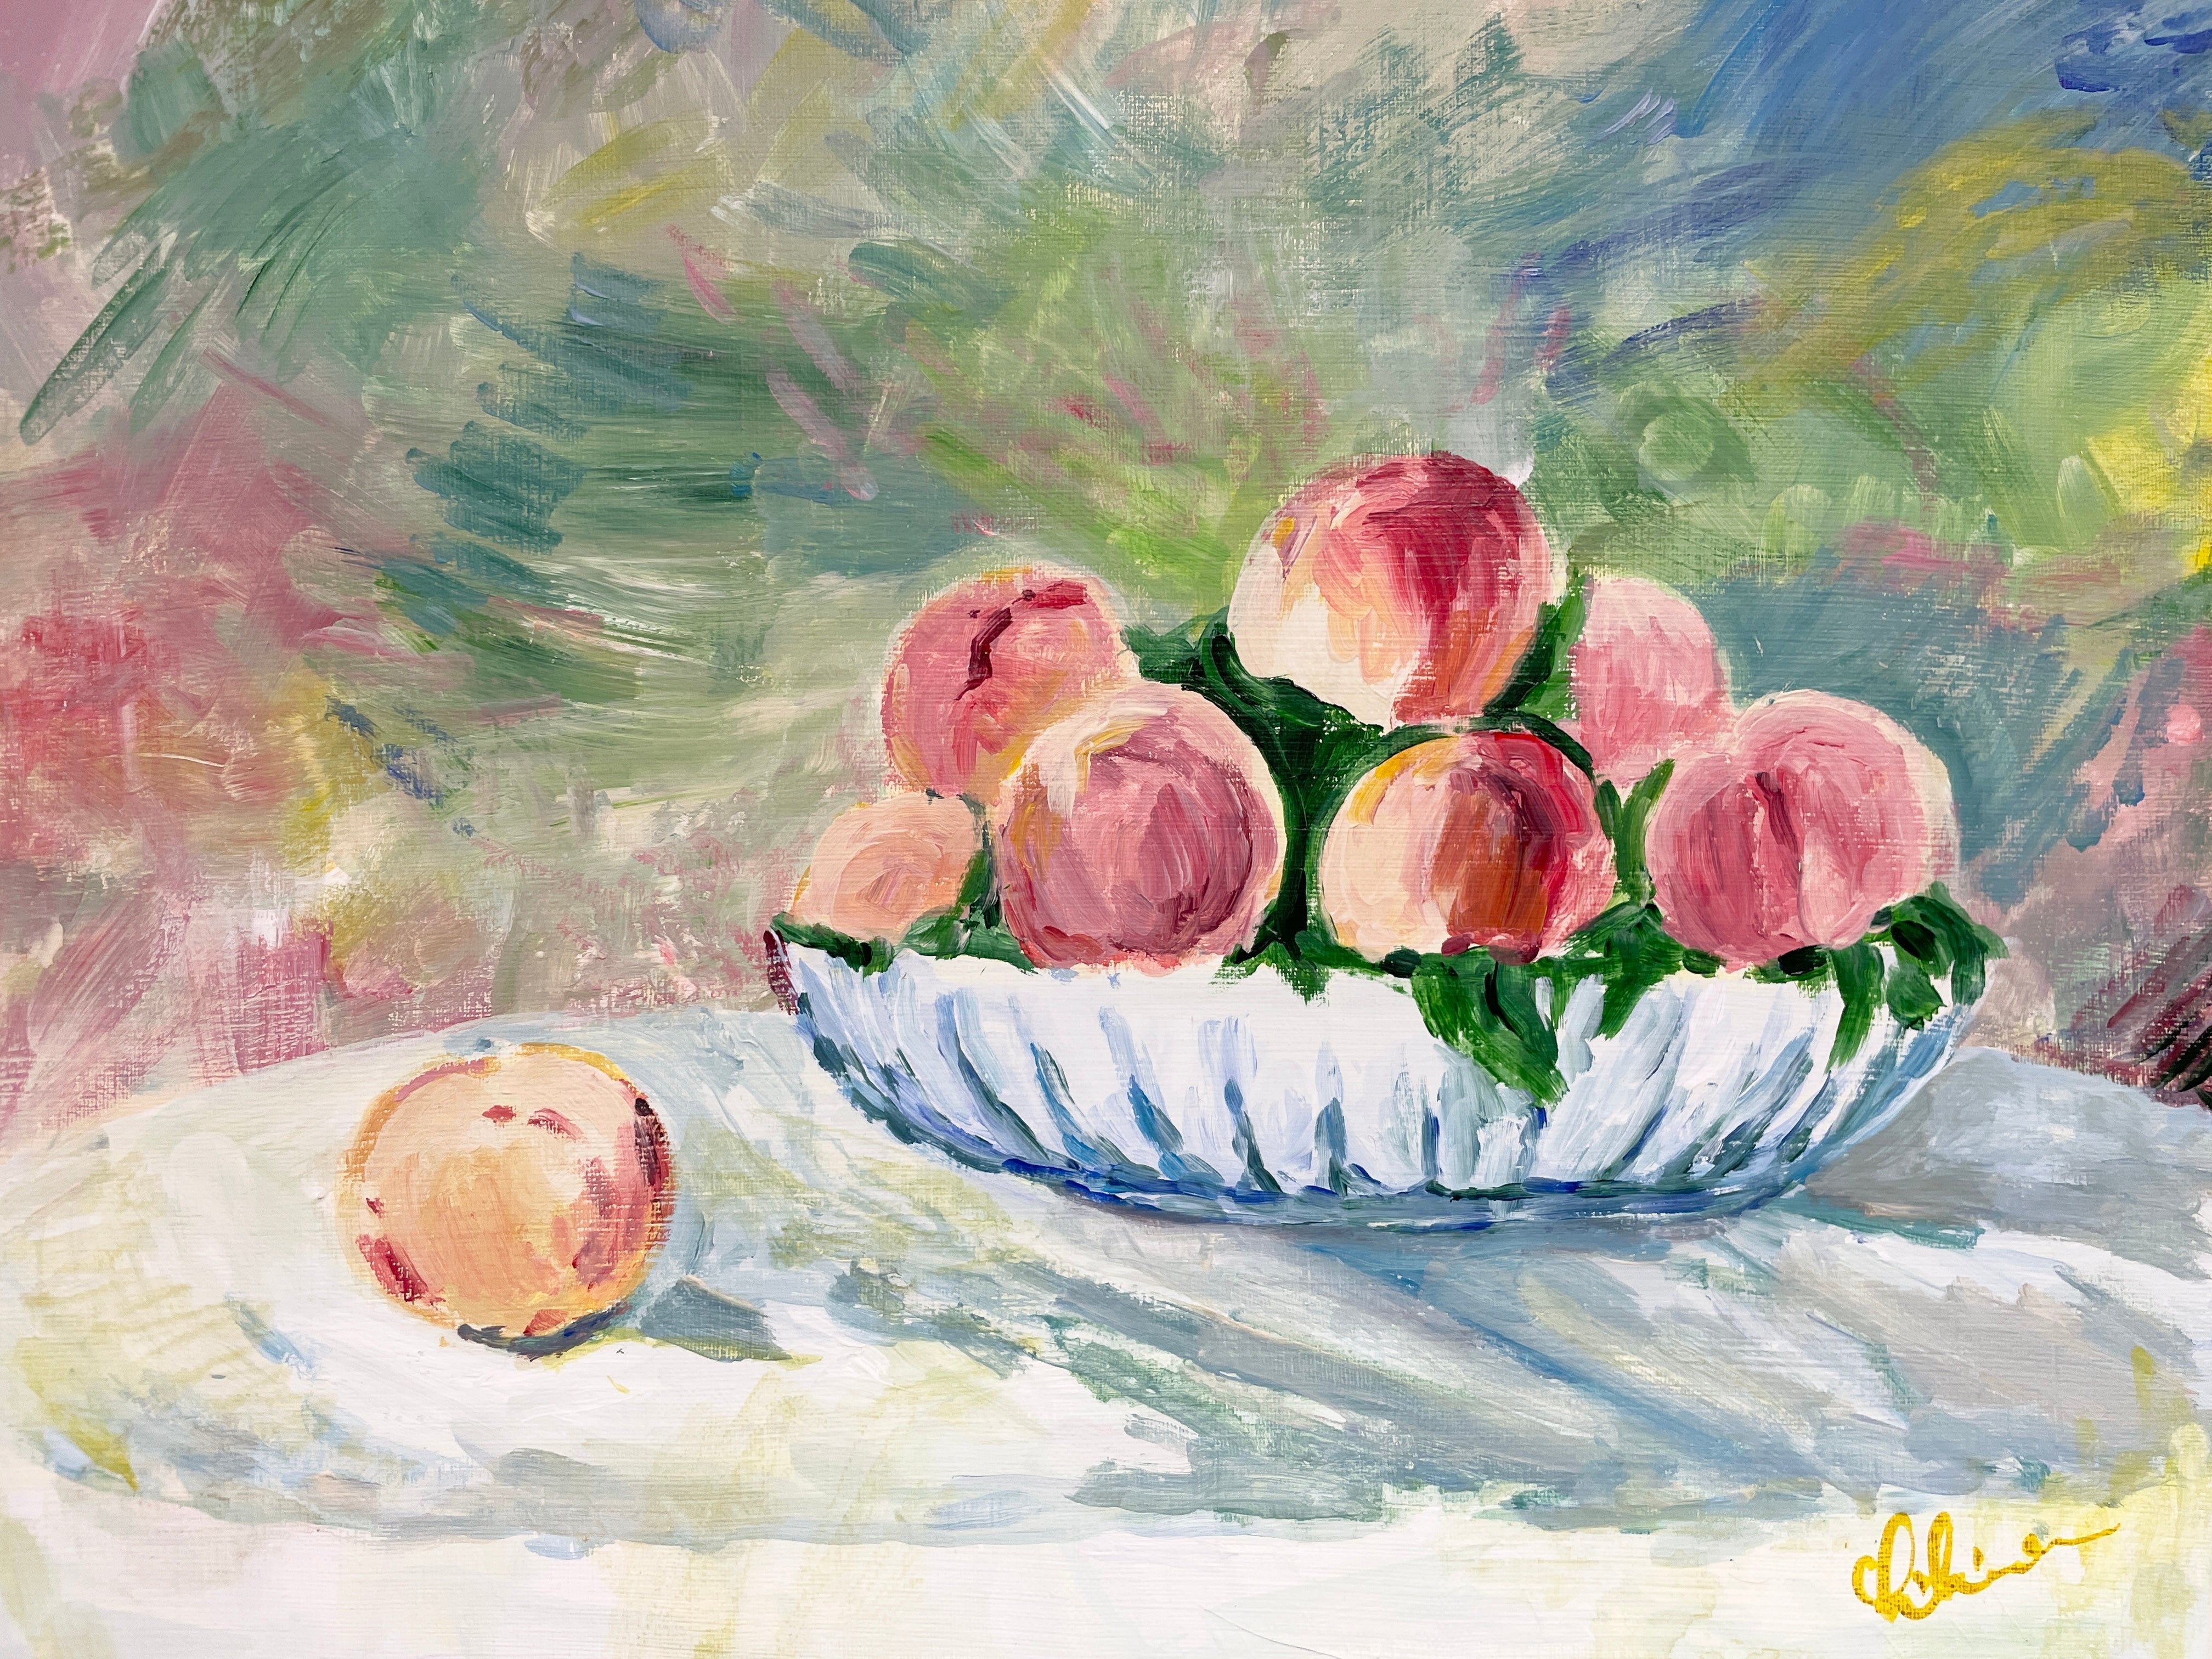 05月11日 (土) 14:00-17:00 | 上野/根津 | オーギュスト・ルノワール | 桃の静物画 (Peach Still-life Painting by Pierre-Auguste Renoir at Ueno/Nezu)